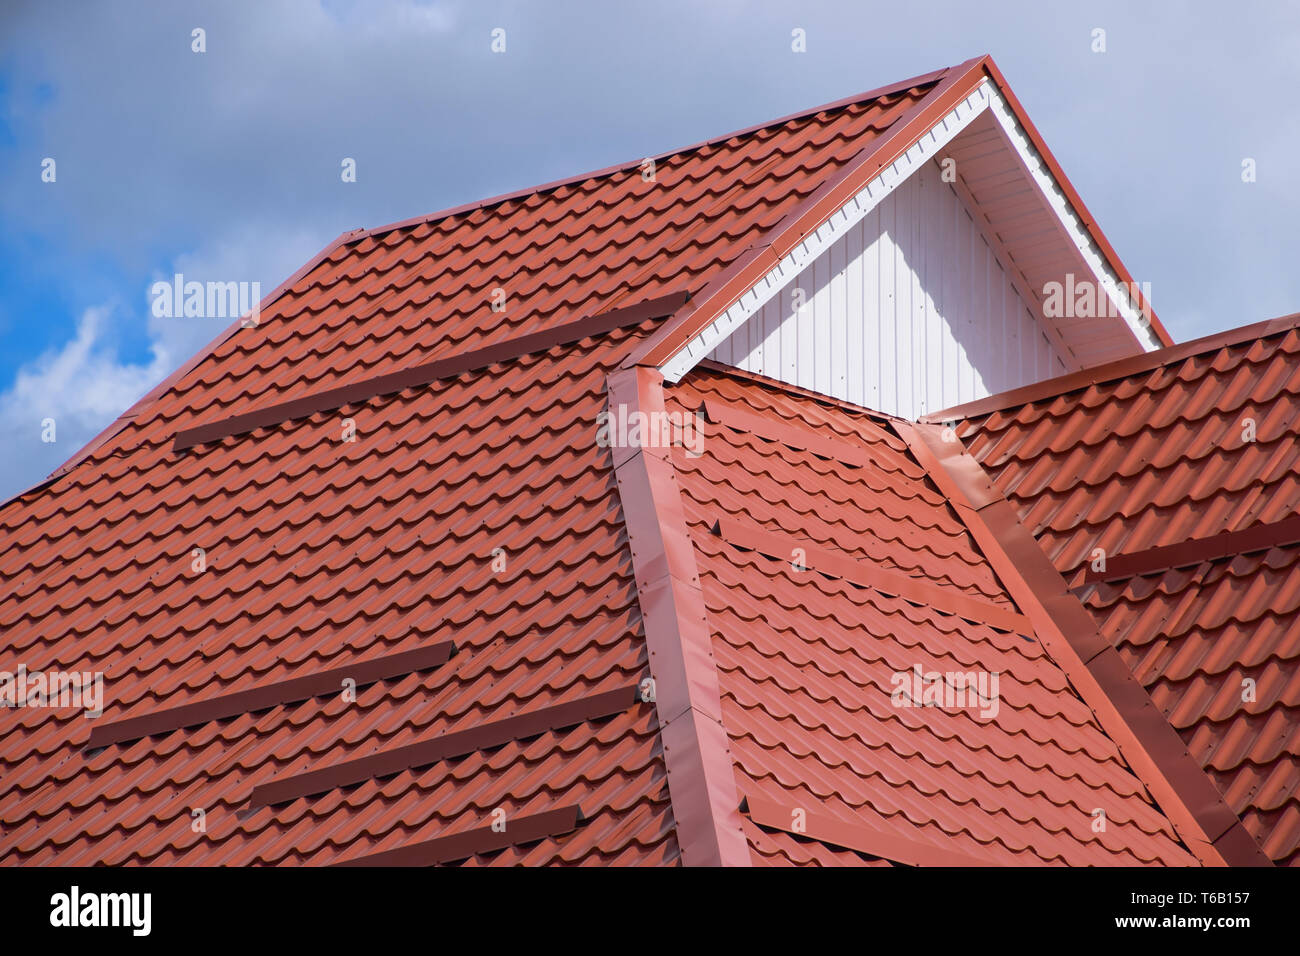 Le toit de tôle ondulée rouge orange Banque D'Images